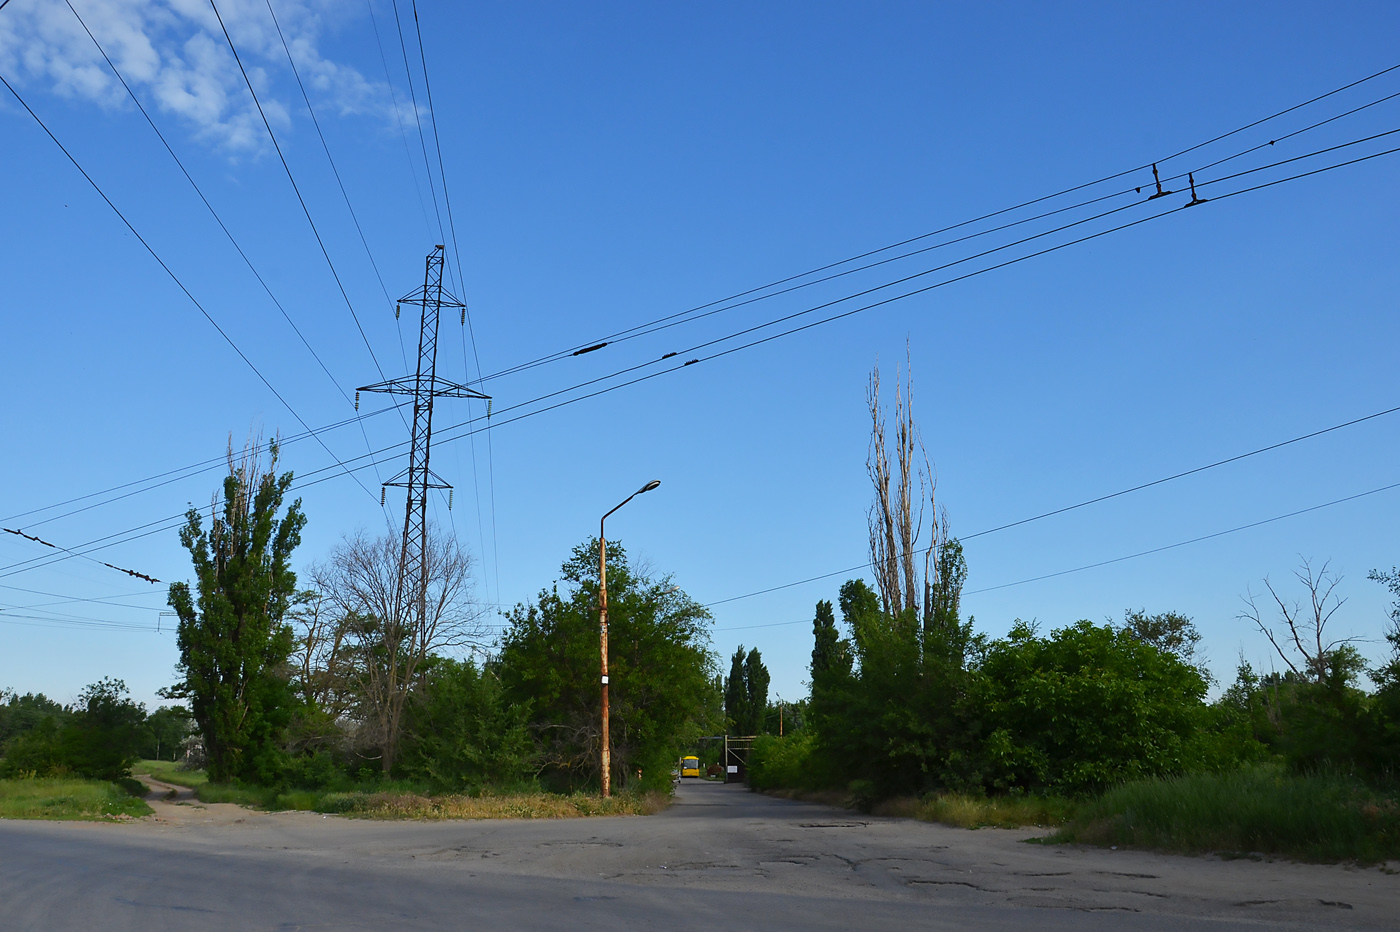 Волгодонск — Служебные и закрытые линии